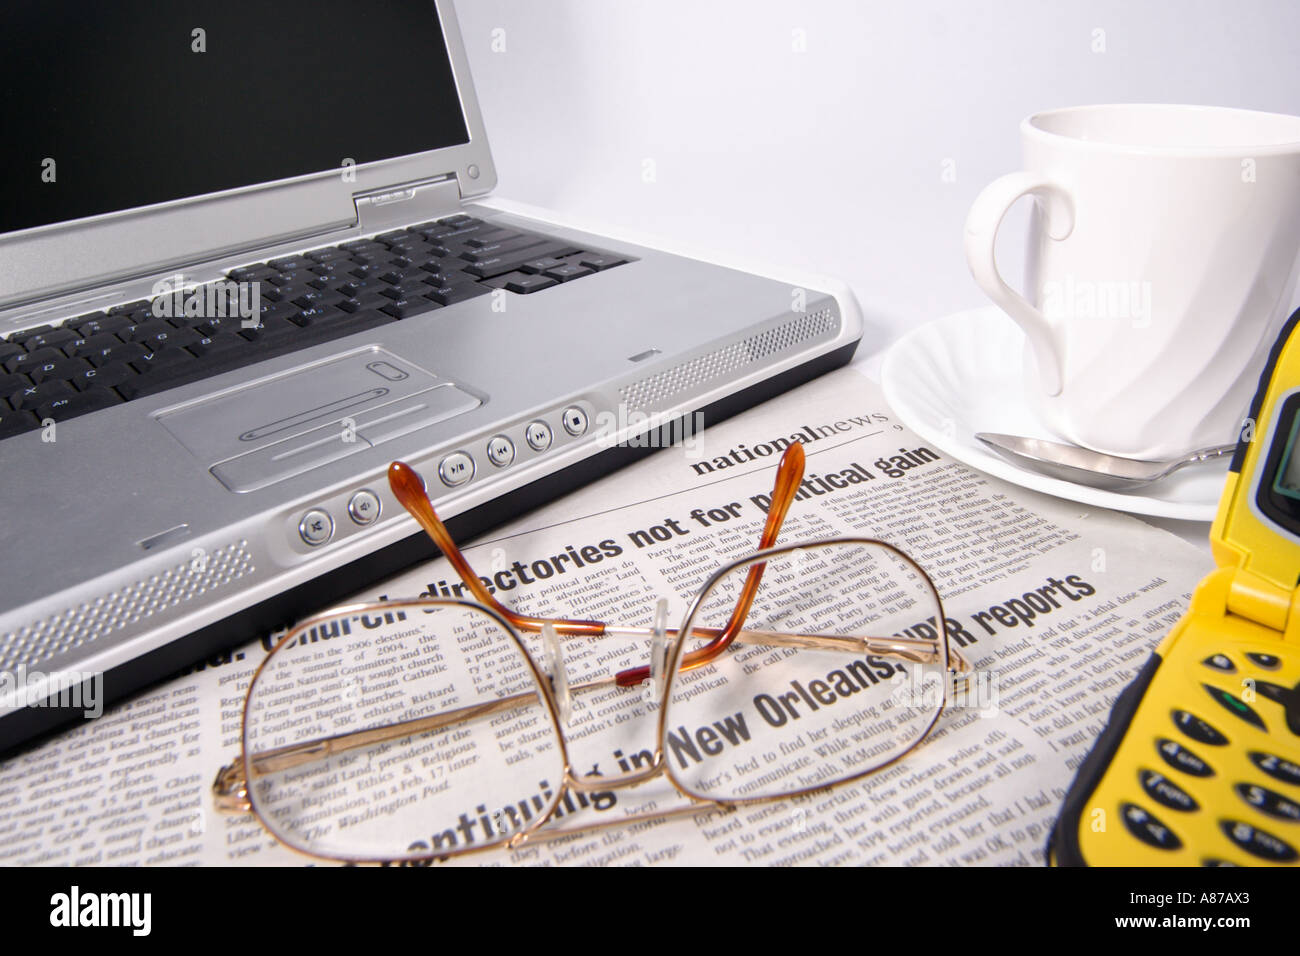 Offenen Laptop Notebook-Computer mit Augenmuschel Gläser Kaffee Zeitung auf eine Untertasse und ein Handy Stockfoto